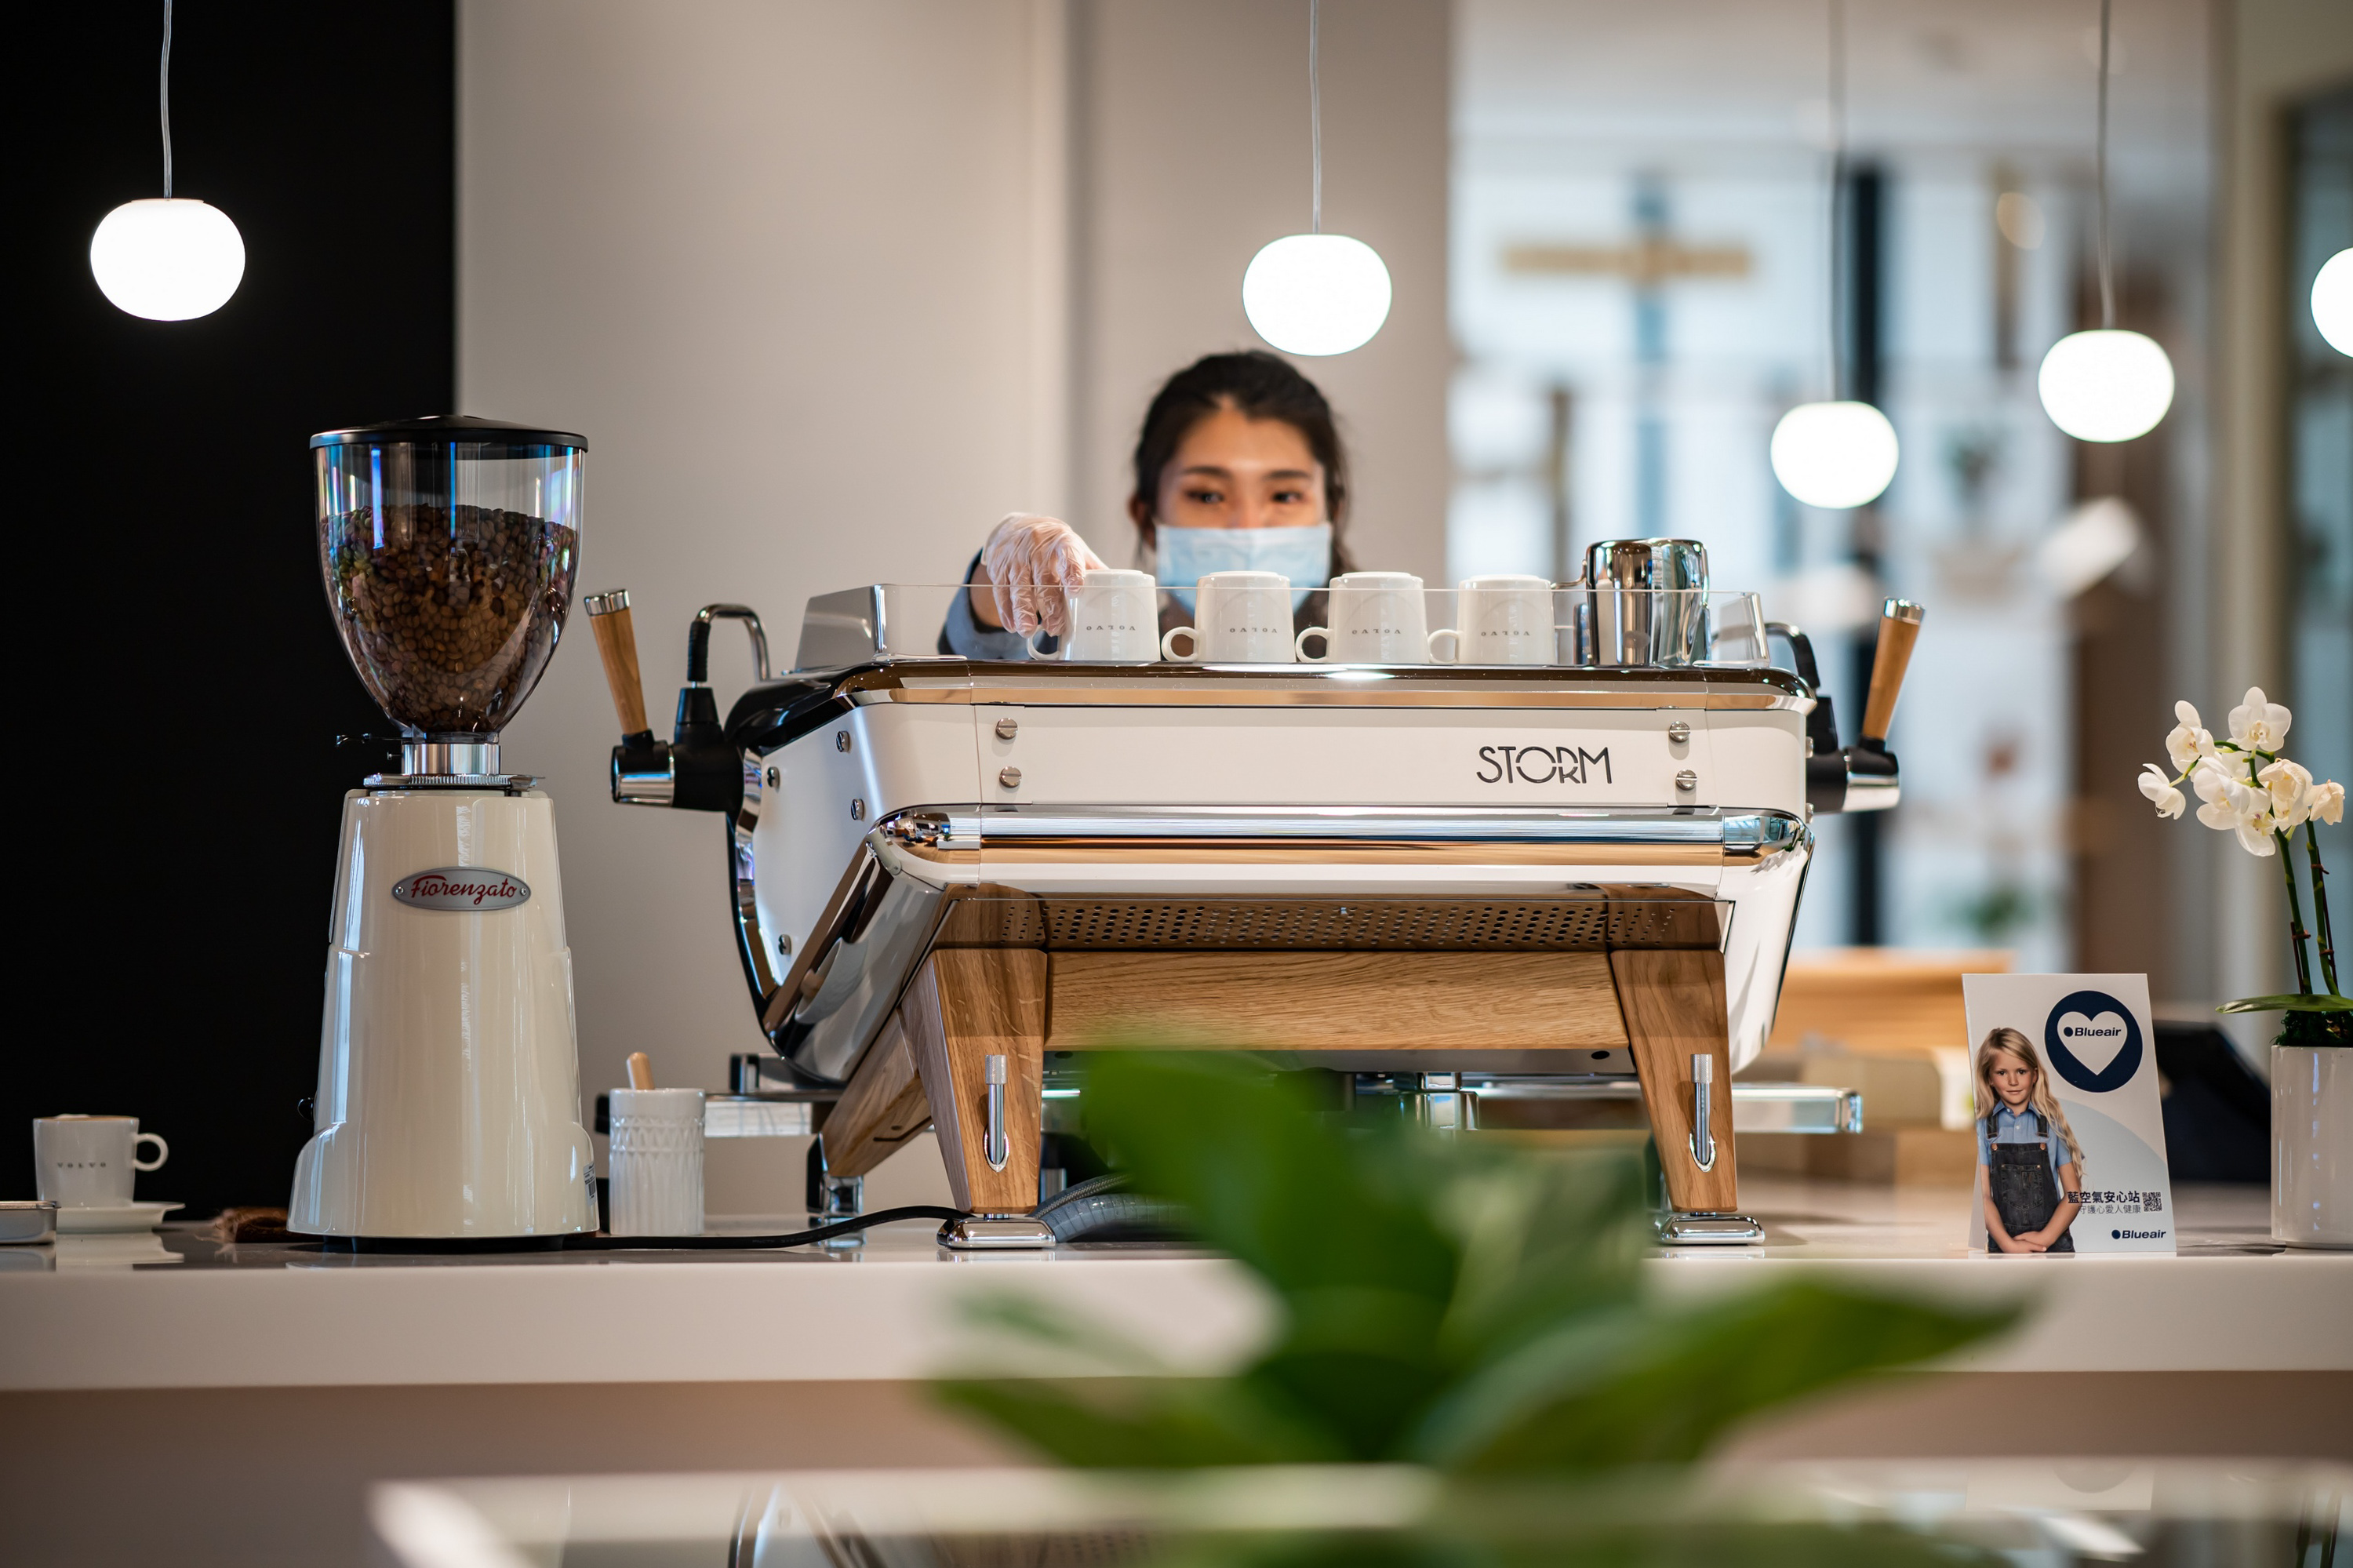 二樓吧台區導入義大利品牌 Astoria Storm 頂級半自動咖啡機。